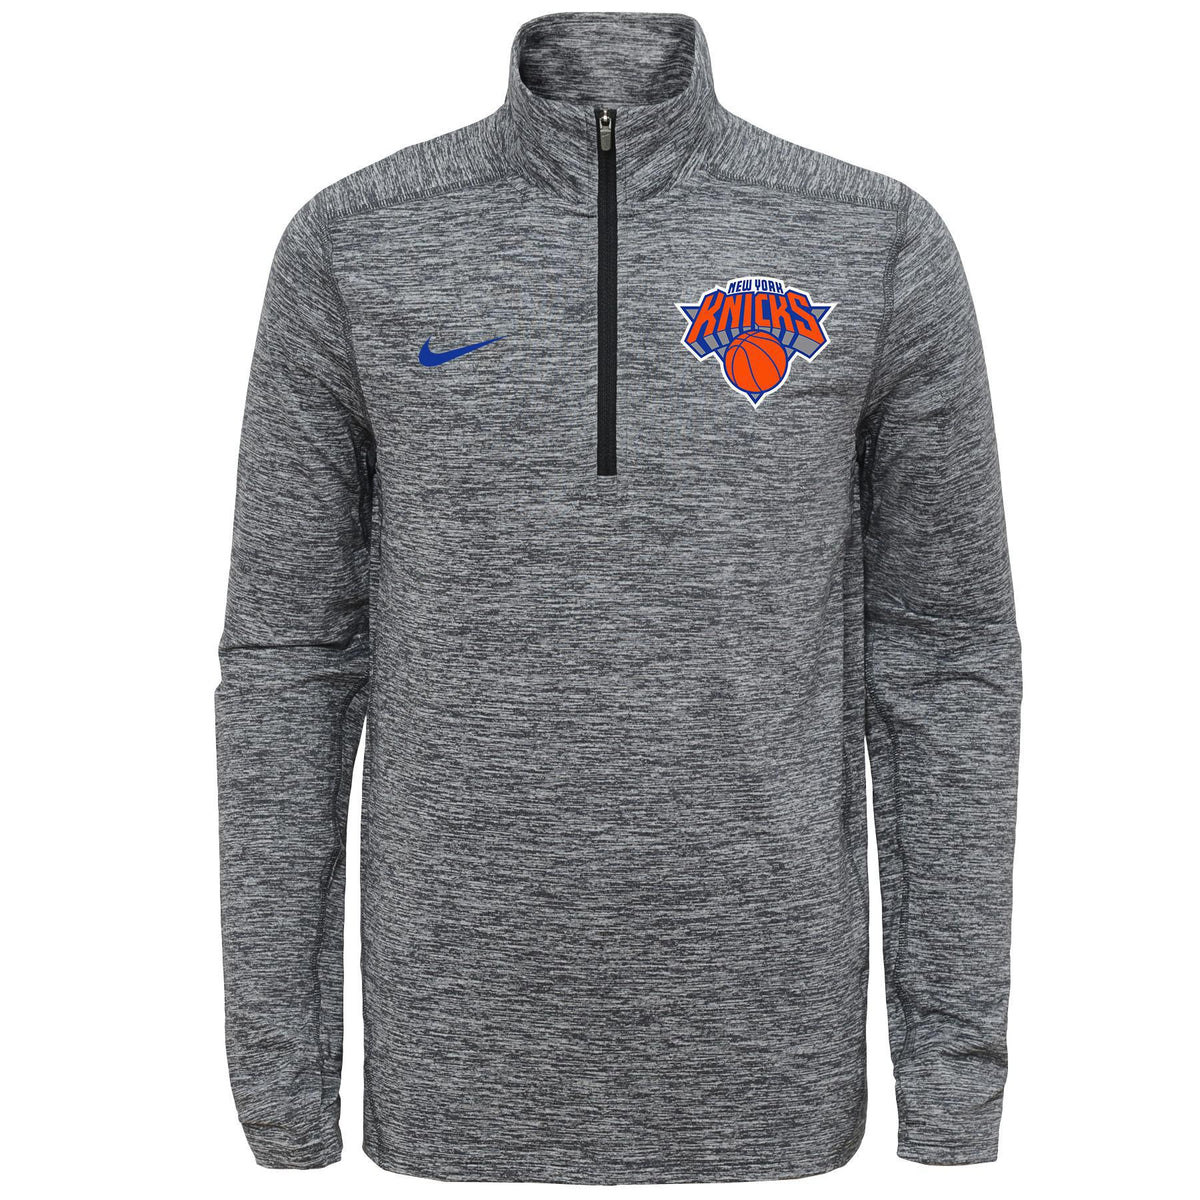 Nike NBA Youth New York Knicks Space Dye Heathered Grey 1/4 Elemen – Fanletic